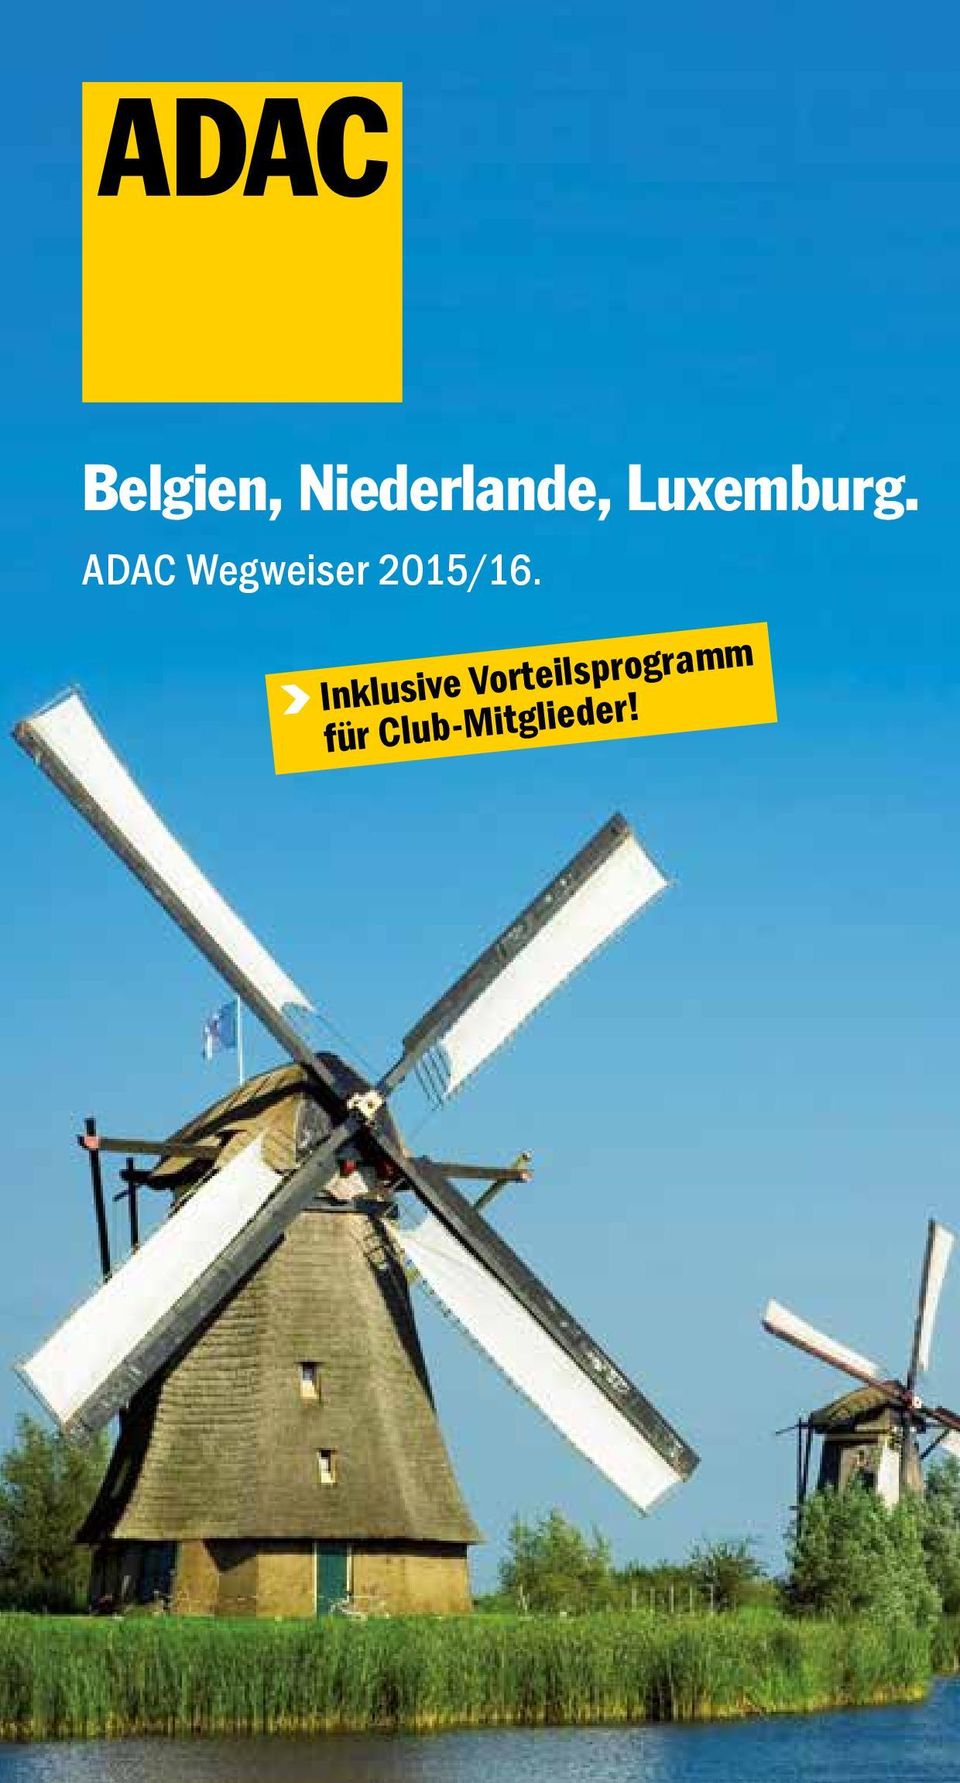 ADAC Wegweiser 2015/16.